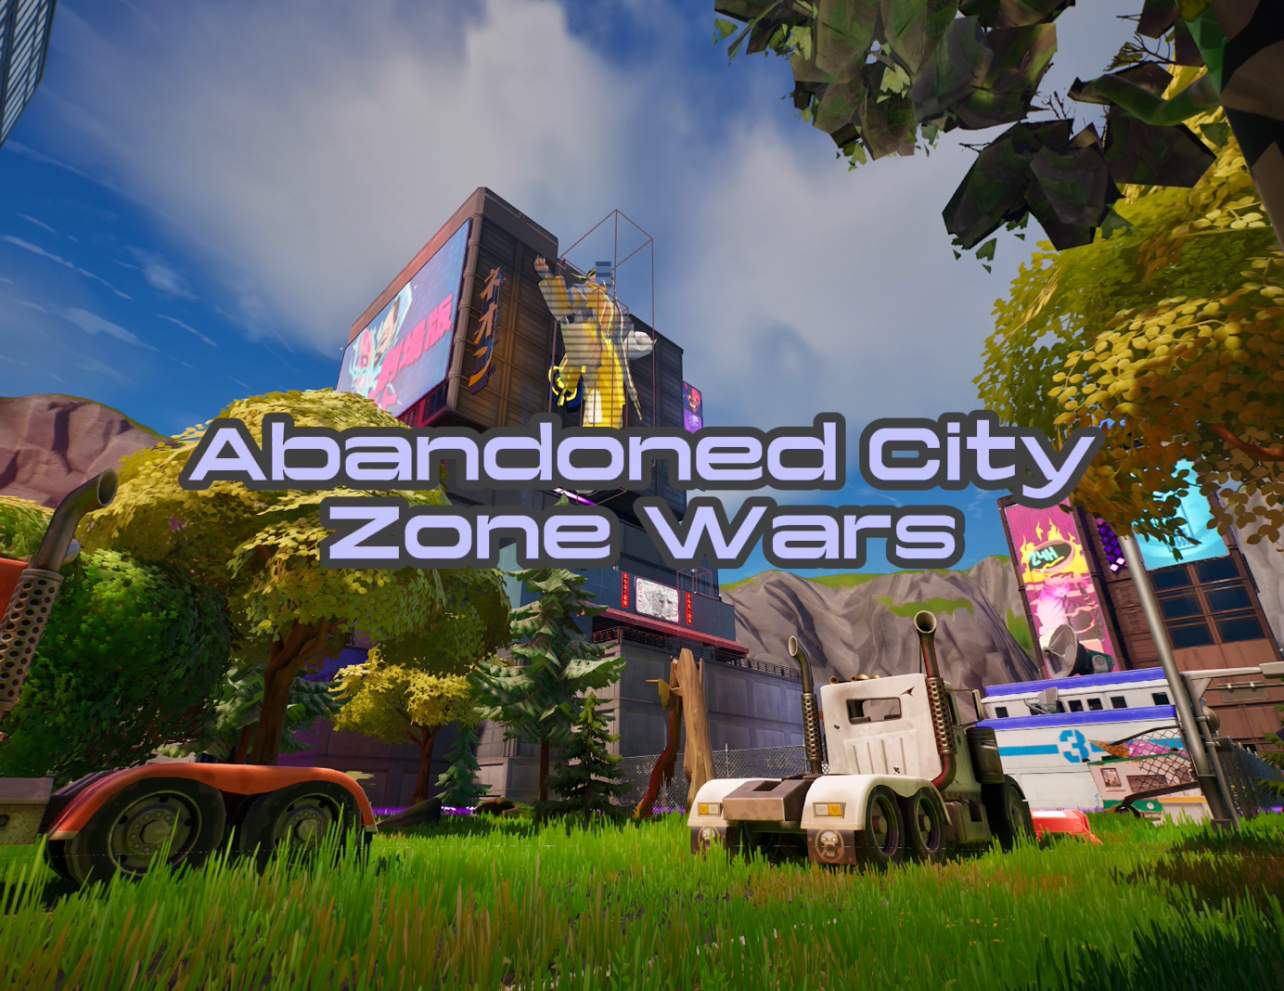 Abandoned City Zone Wars image 3